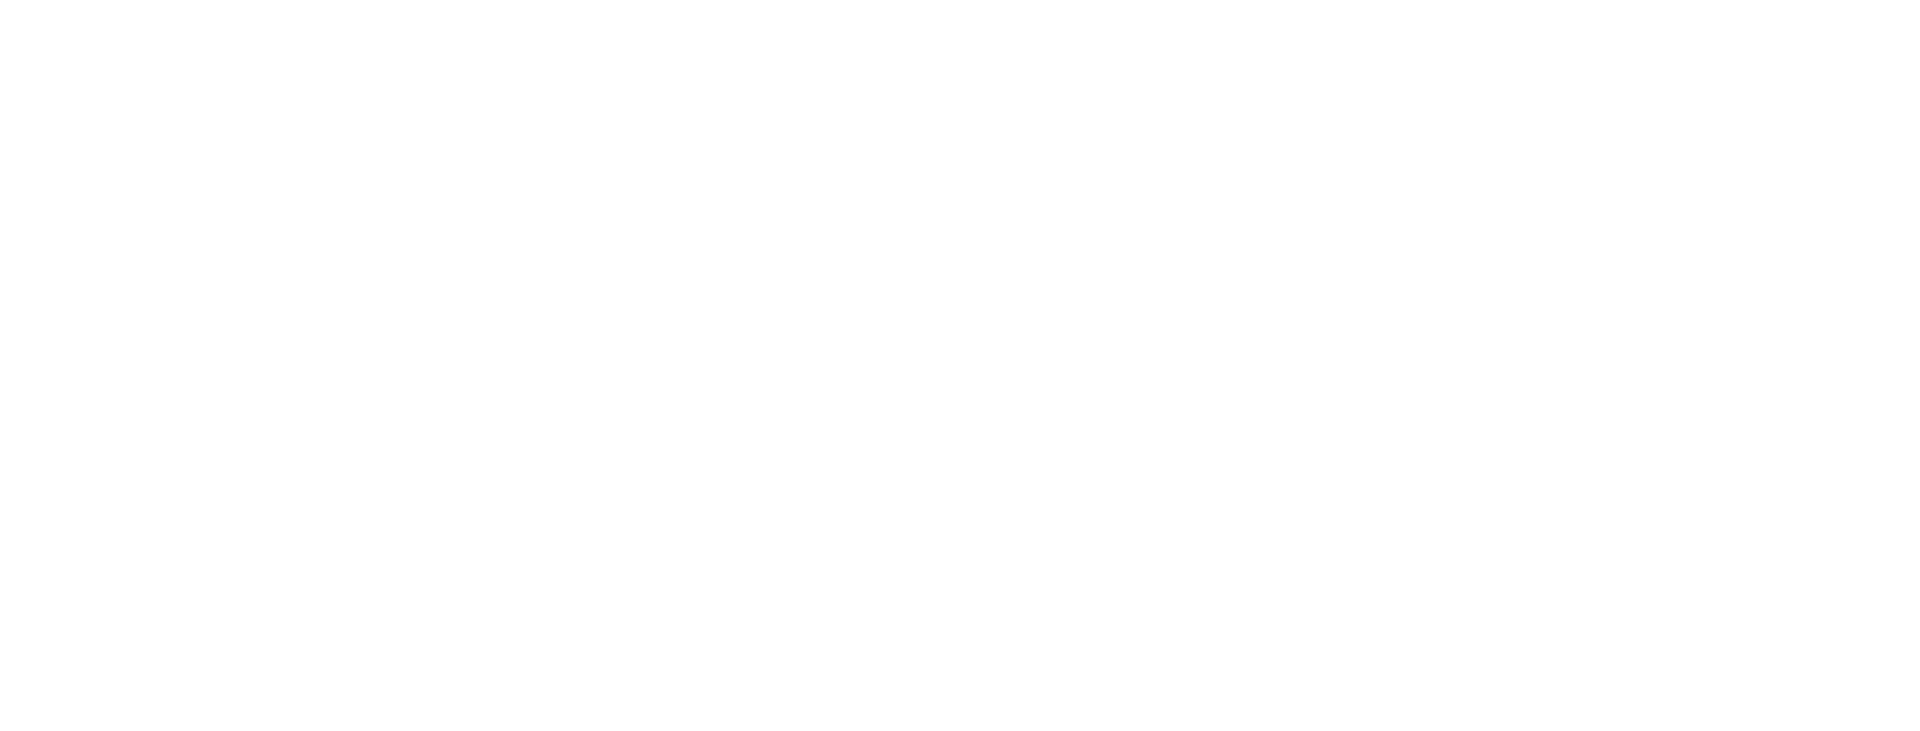 logo commission de la construction du québec